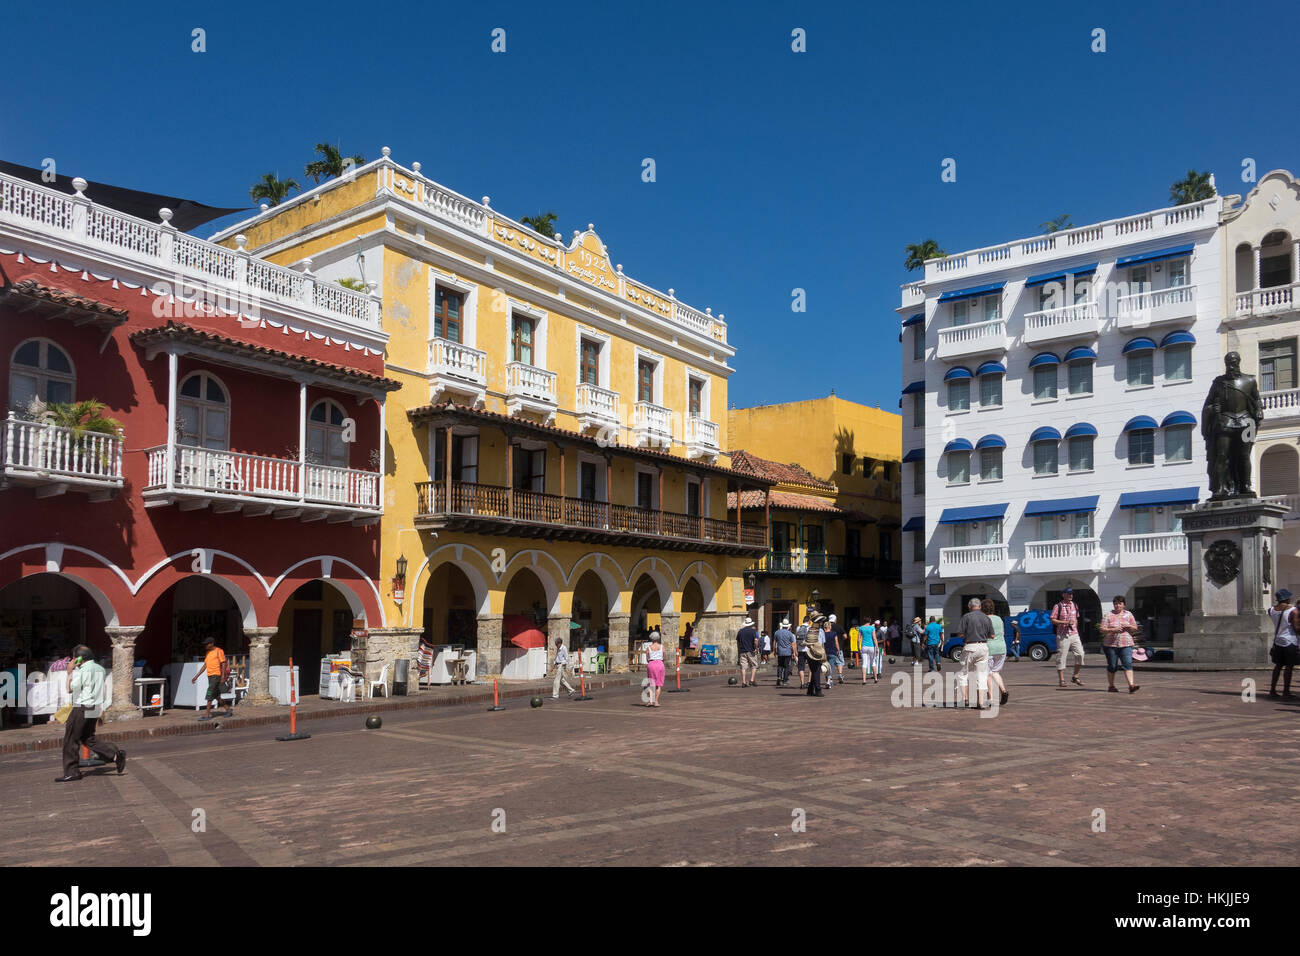 Colombia, Cartagena, Plaza de los Coches Stock Photo